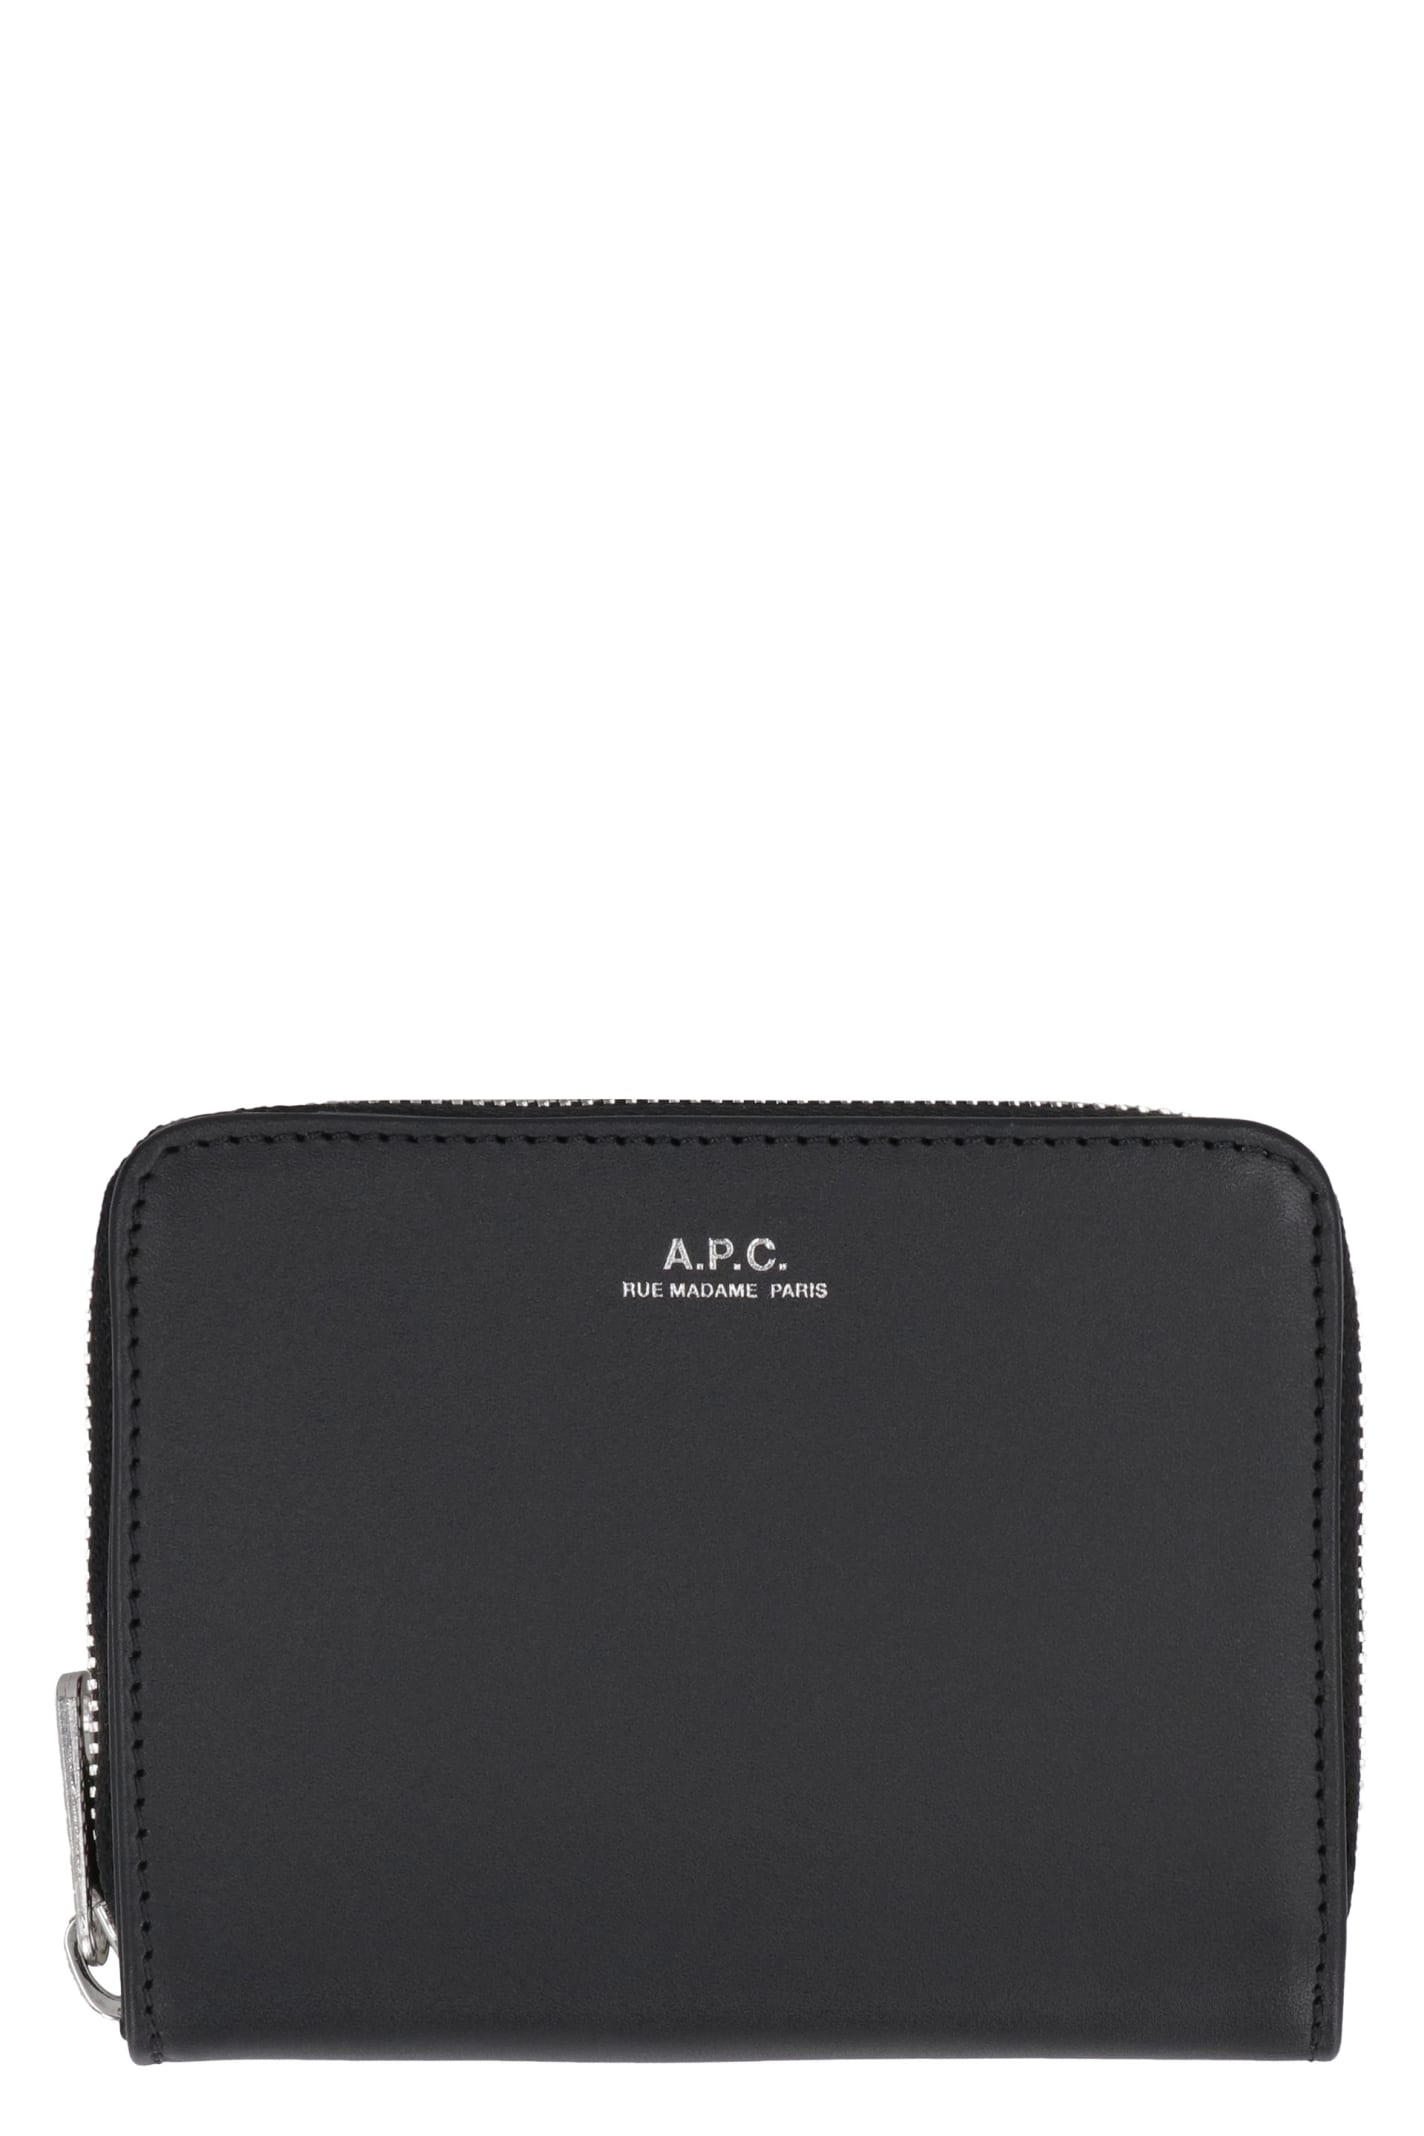 Apc Emmanuel Leather Wallet In Black